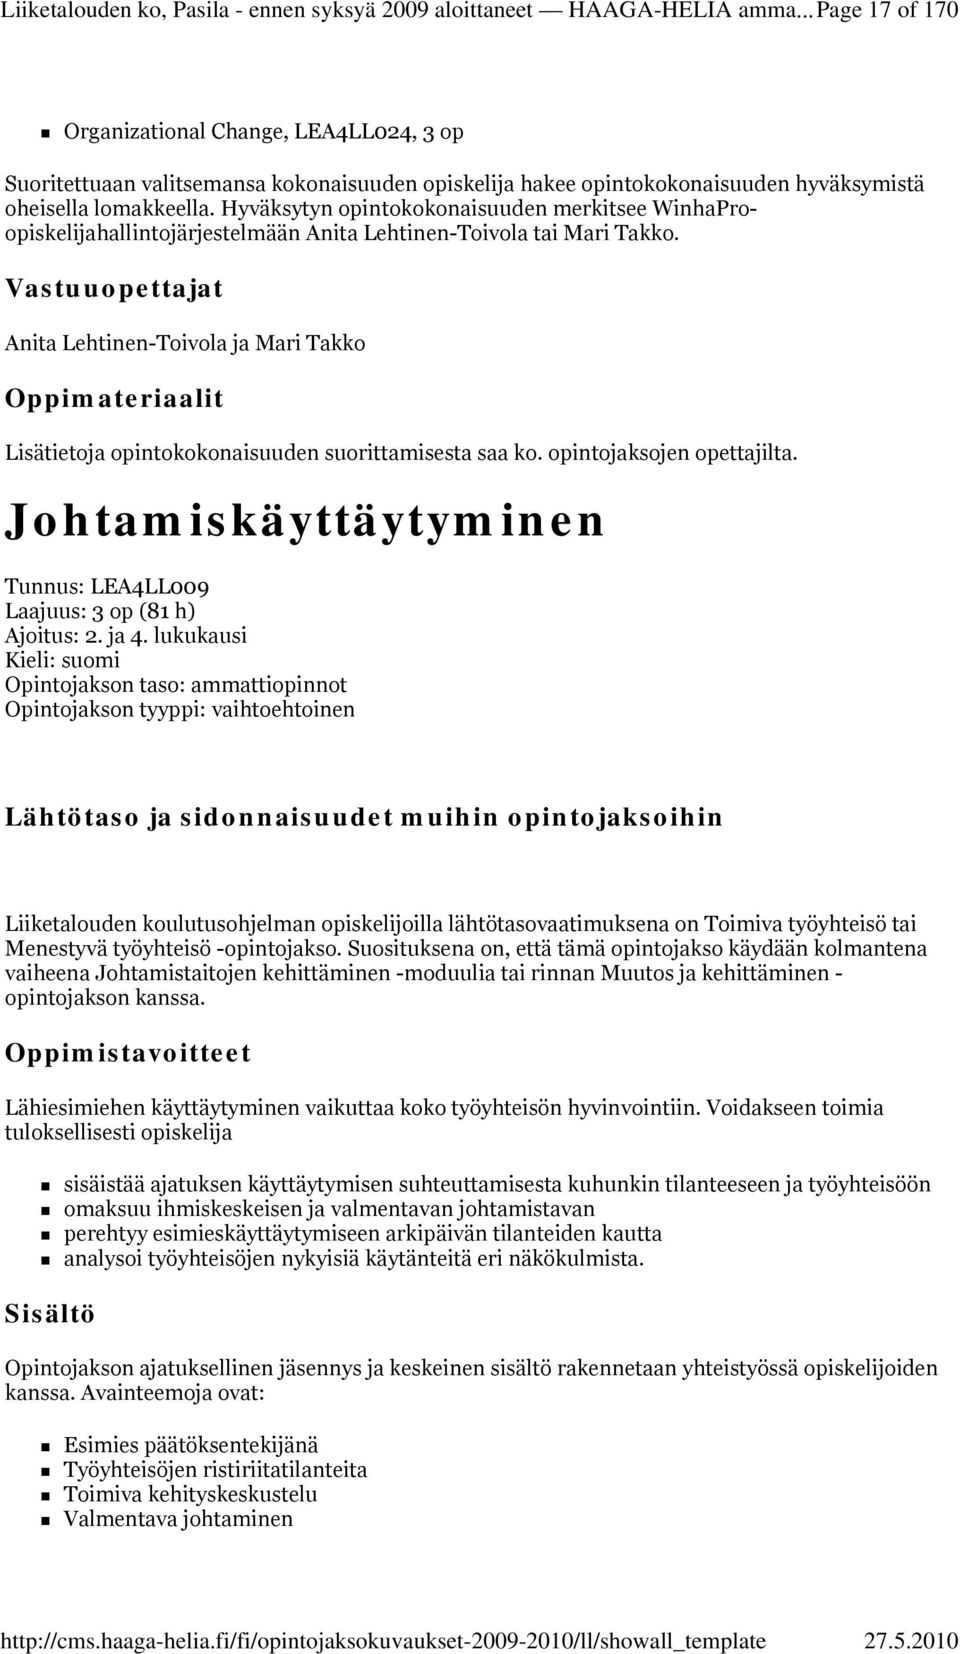 Hyväksytyn opintokokonaisuuden merkitsee WinhaProopiskelijahallintojärjestelmään Anita Lehtinen-Toivola tai Mari Takko.